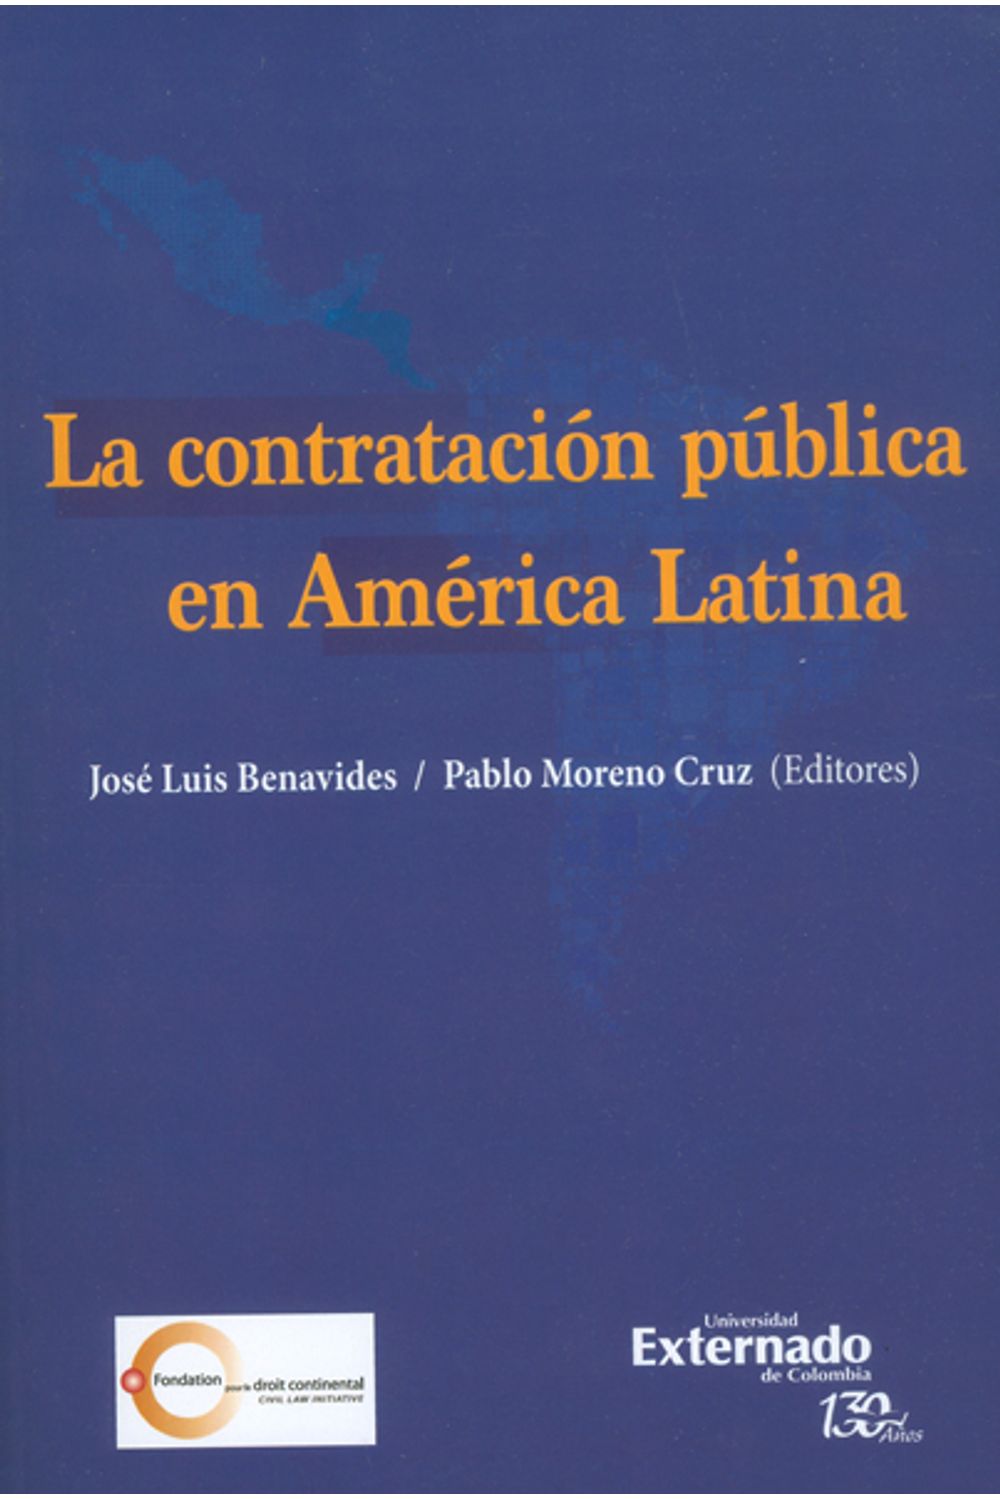 la-contratacion-publica-en-america-latina-9789587724844-uext